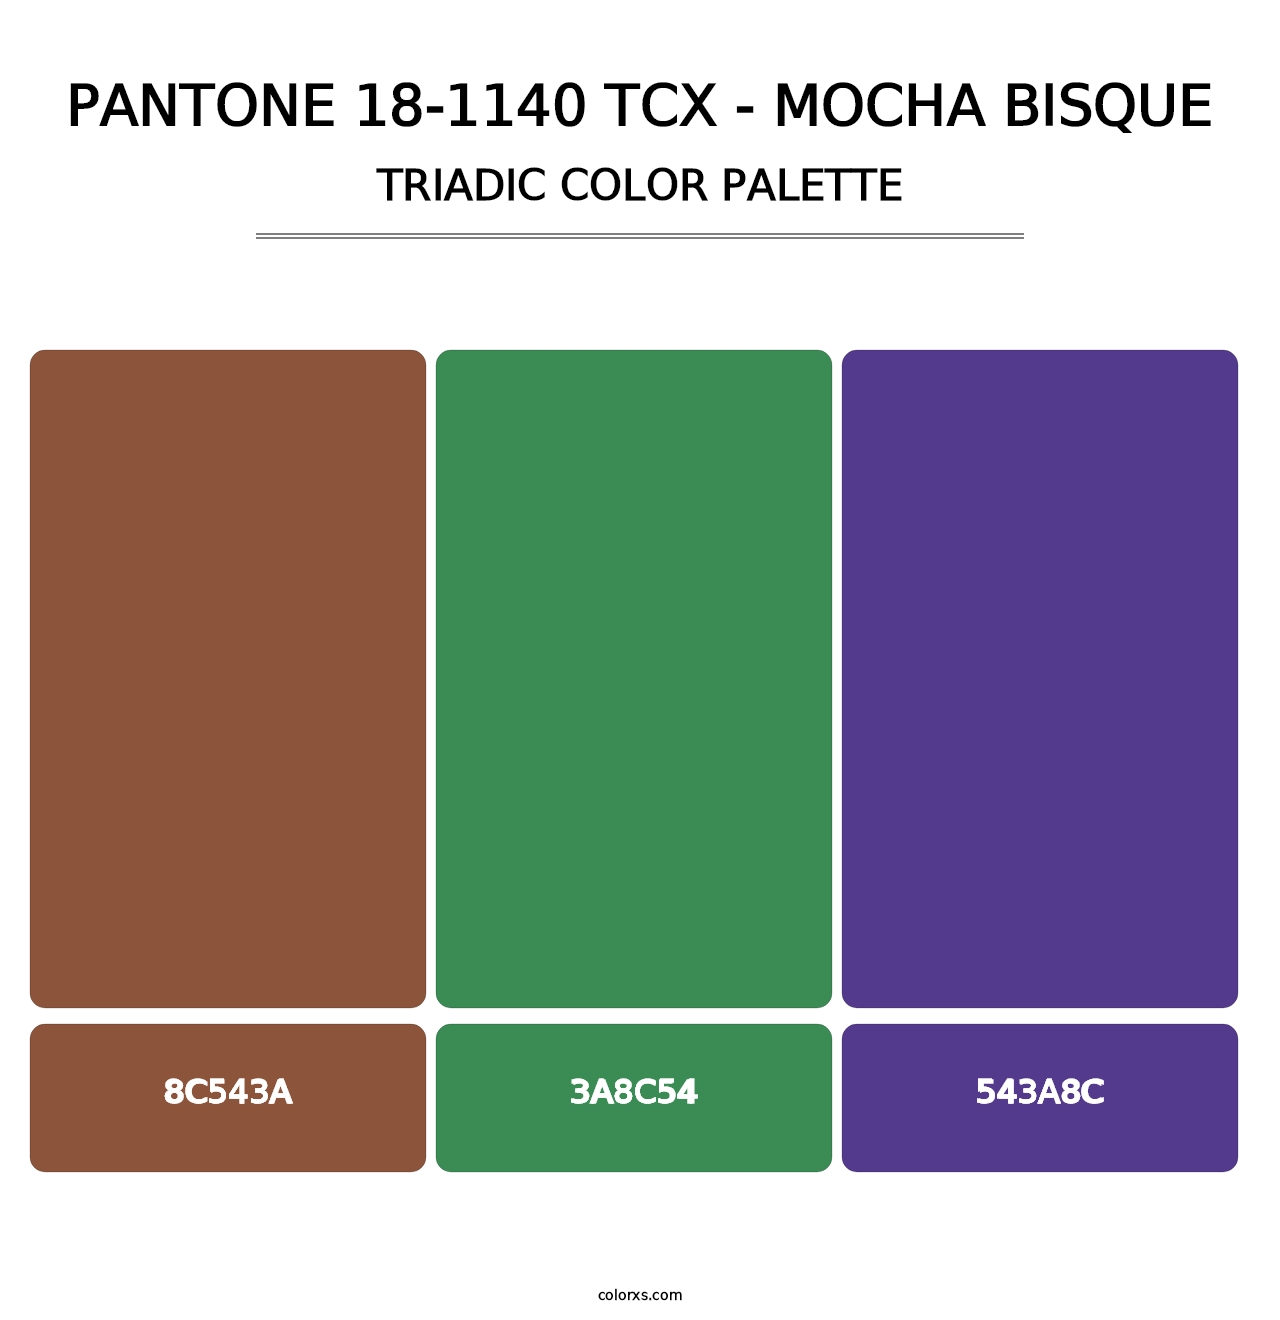 PANTONE 18-1140 TCX - Mocha Bisque - Triadic Color Palette